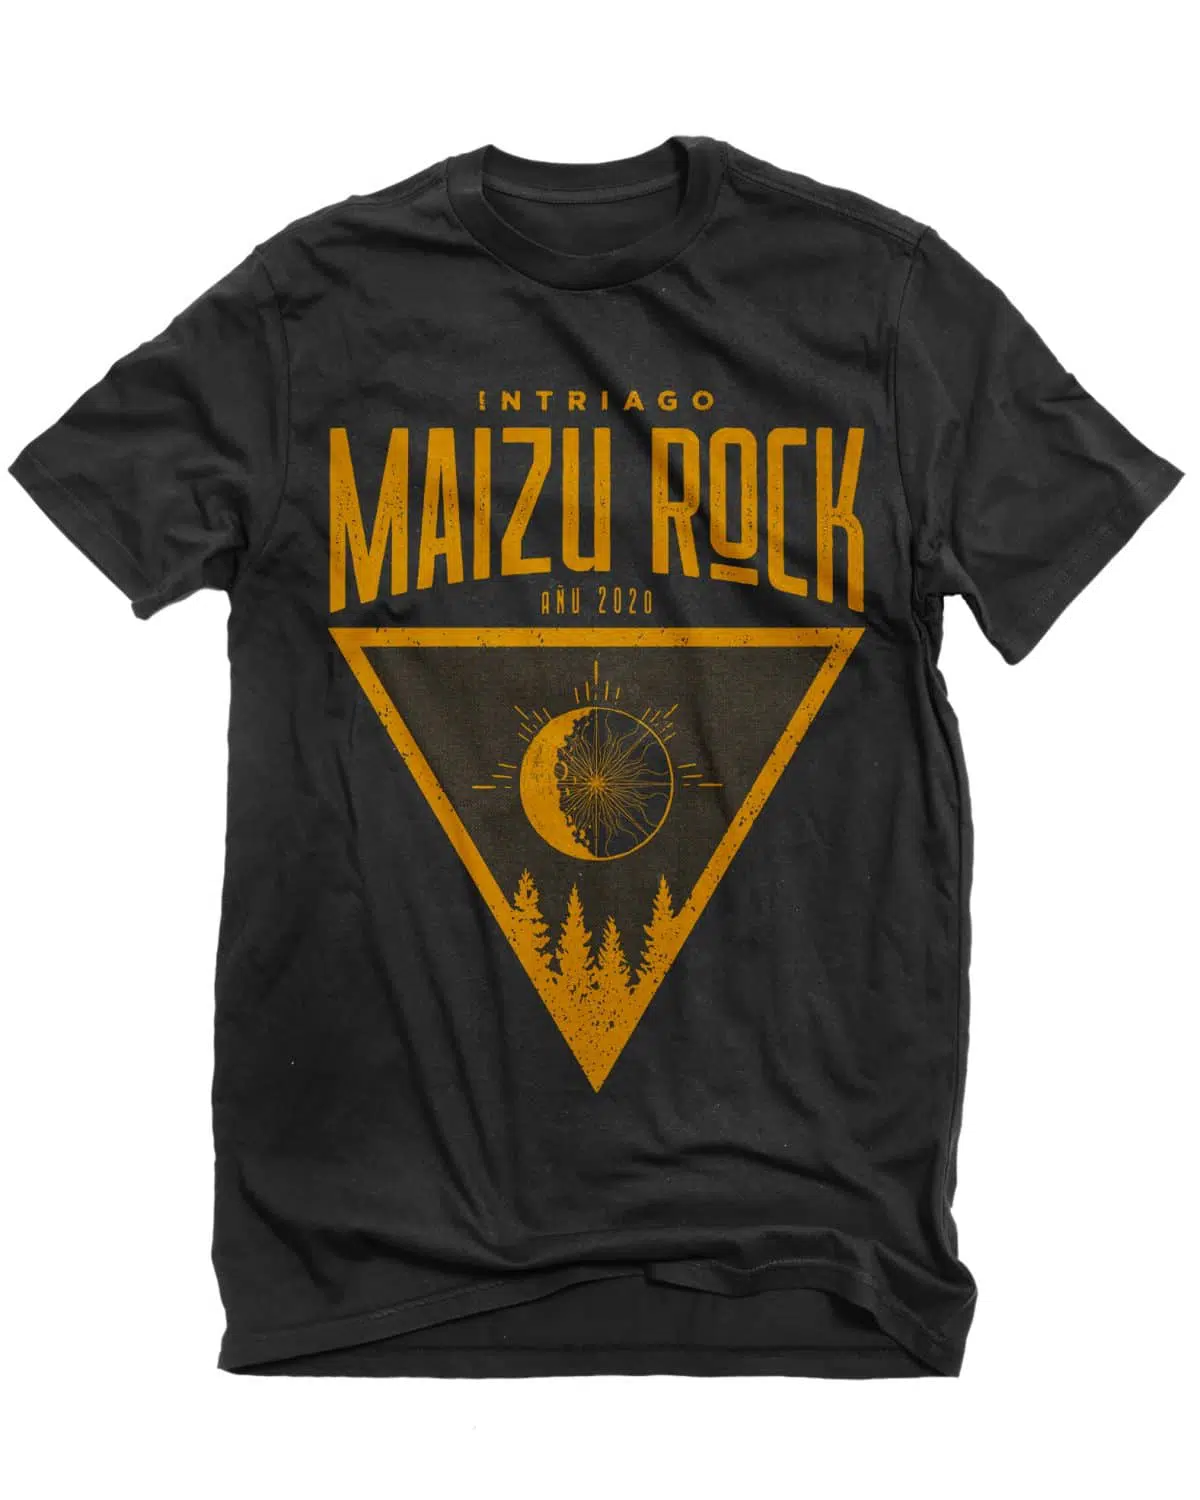 Camiseta Maizu 2020 e1582024503744